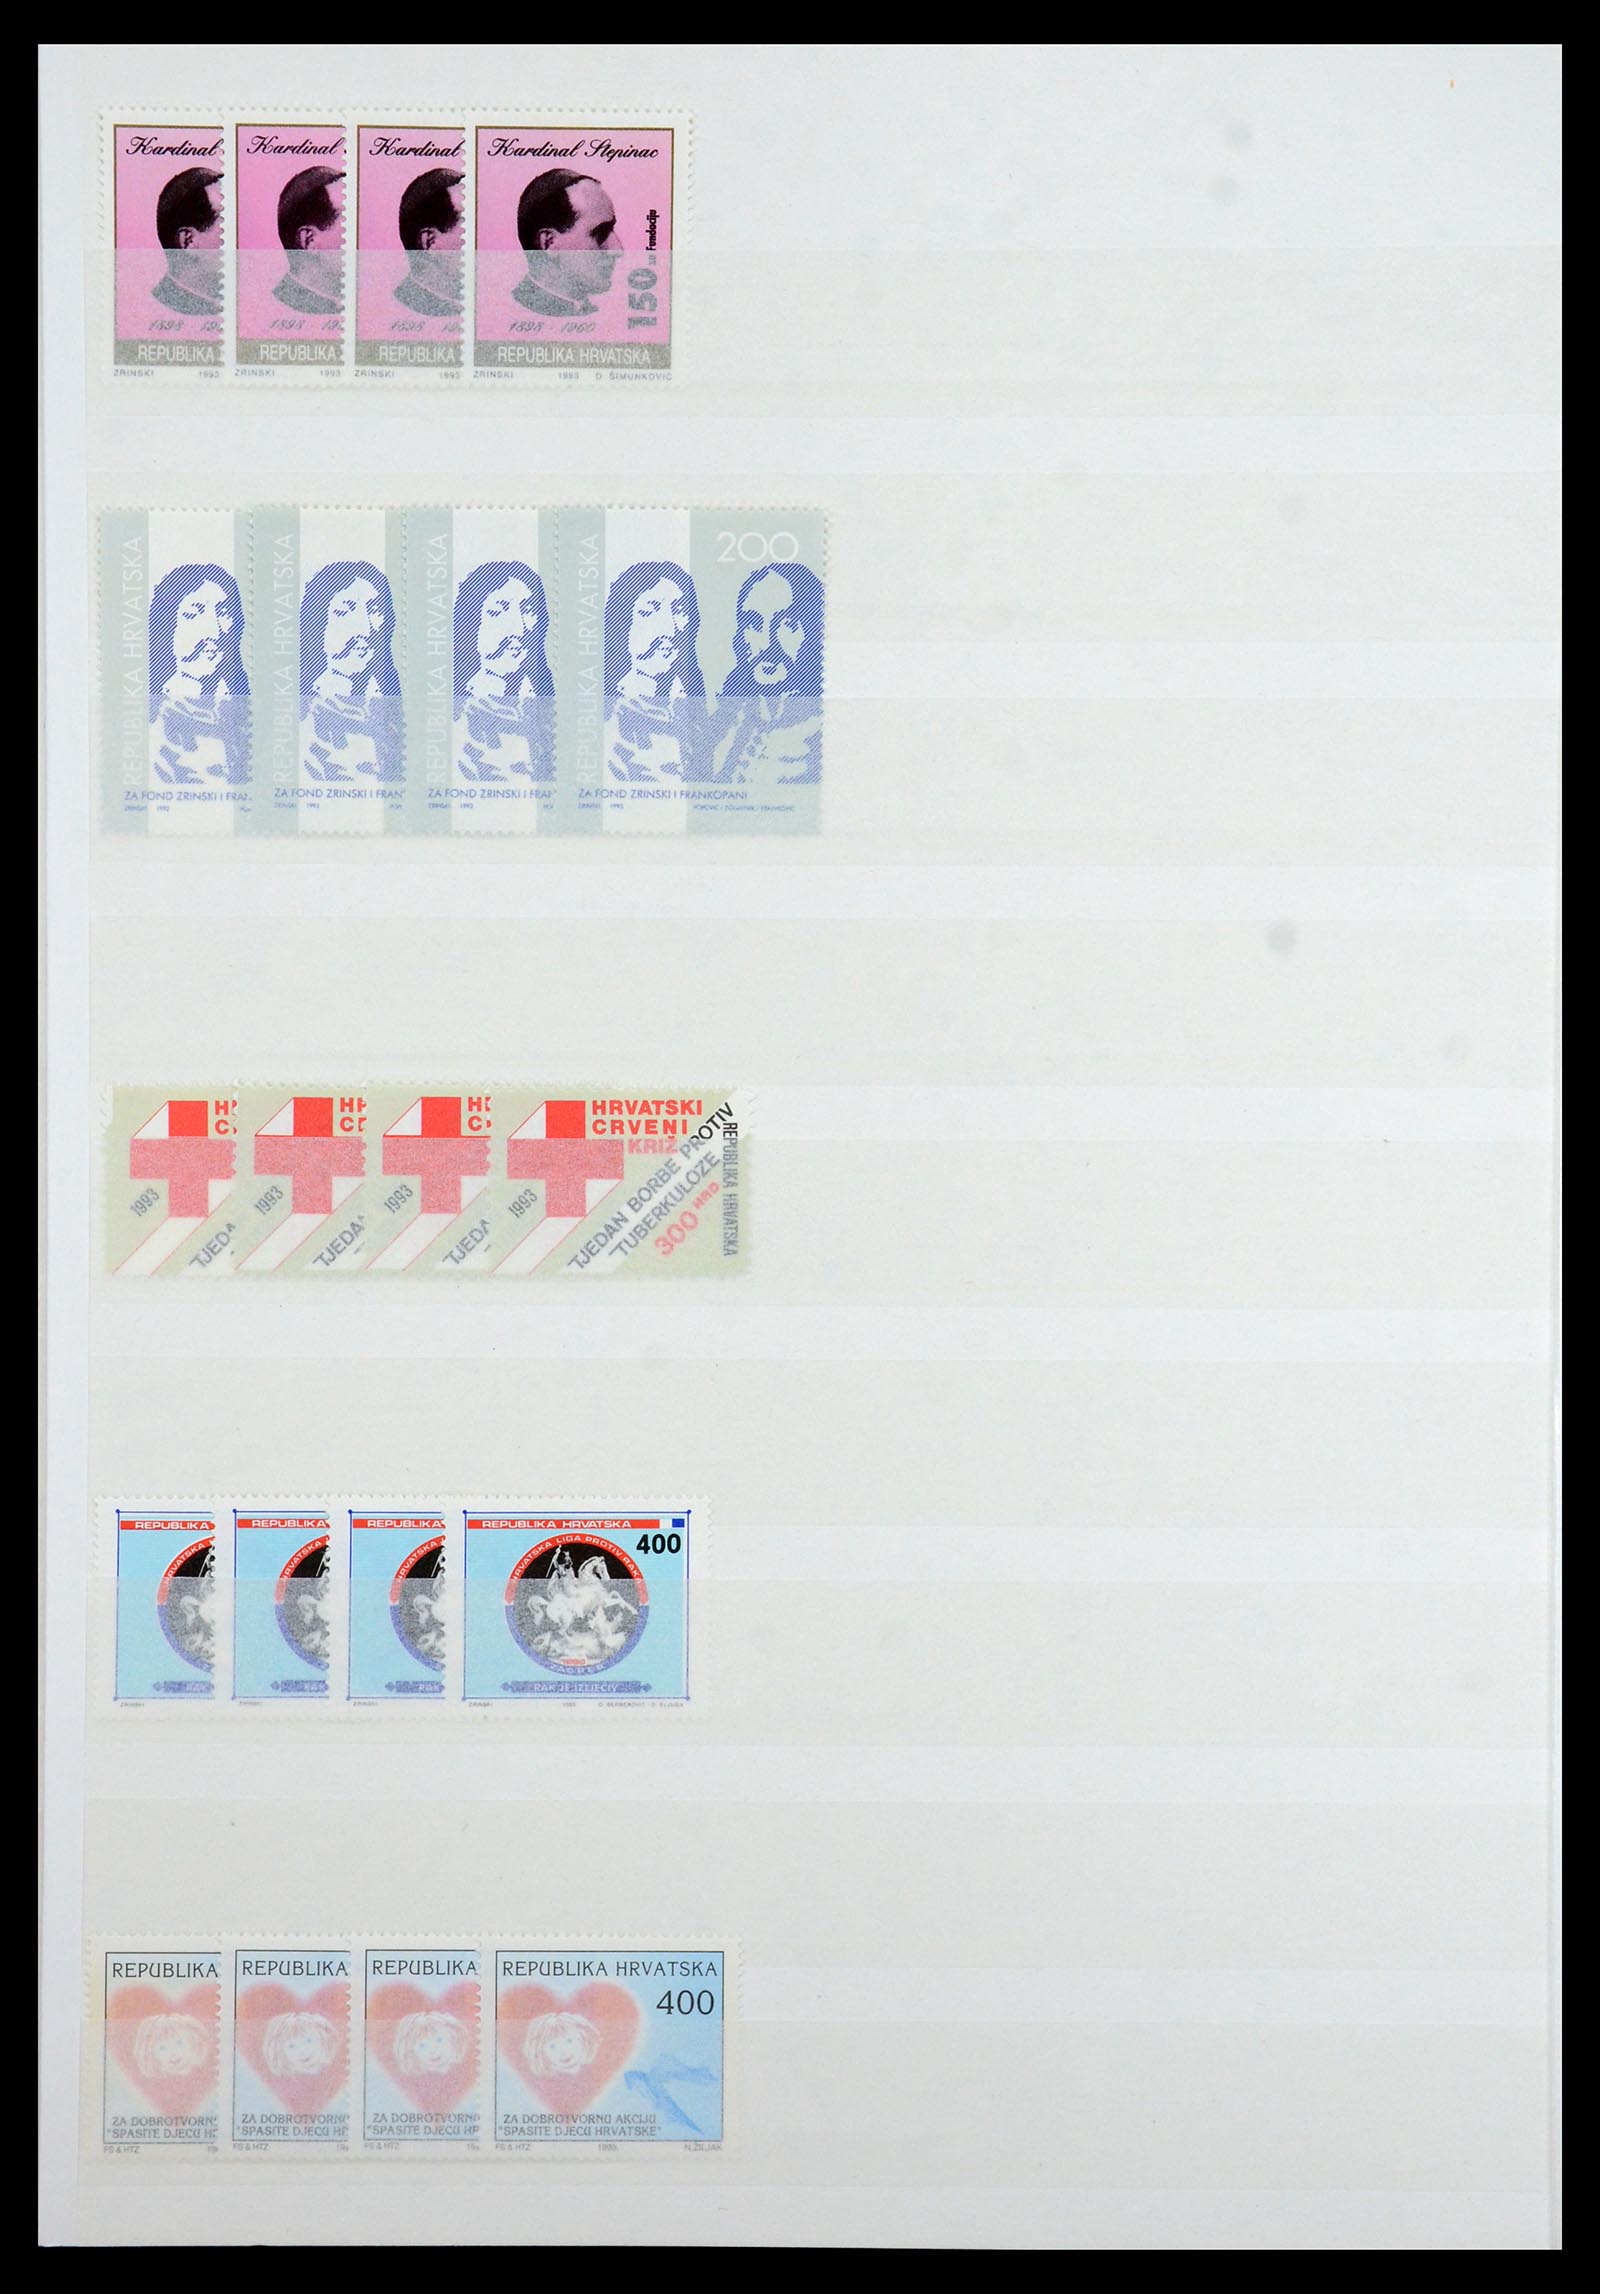 36461 056 - Stamp collection 36461 Slovenia, Croatia and Bosnia-Herzegovina MNH 1991